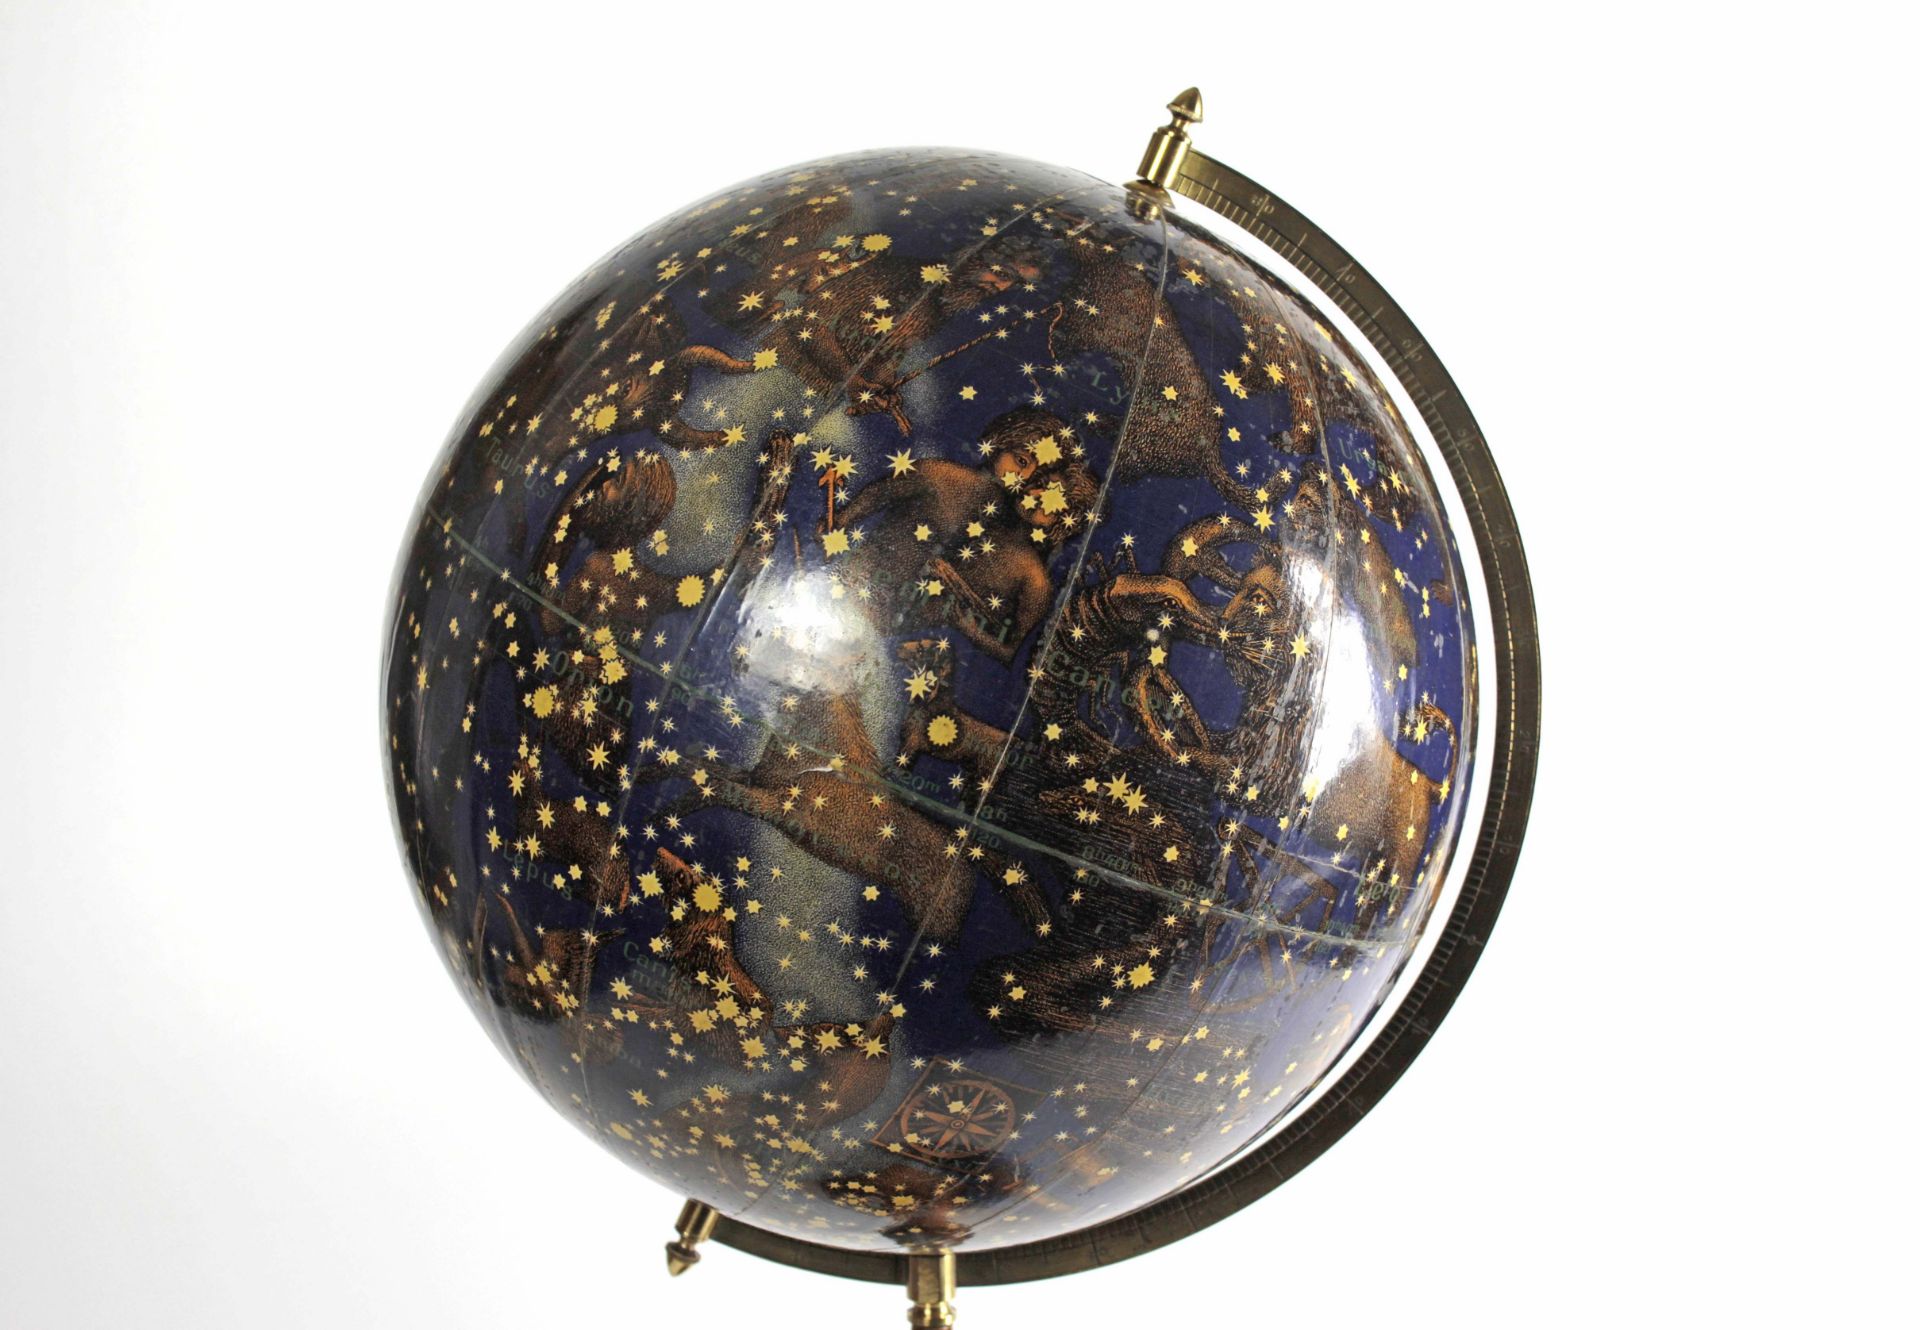 Schöner Himmelsglobus mit figürlichen Sternbildern - Bild 3 aus 6